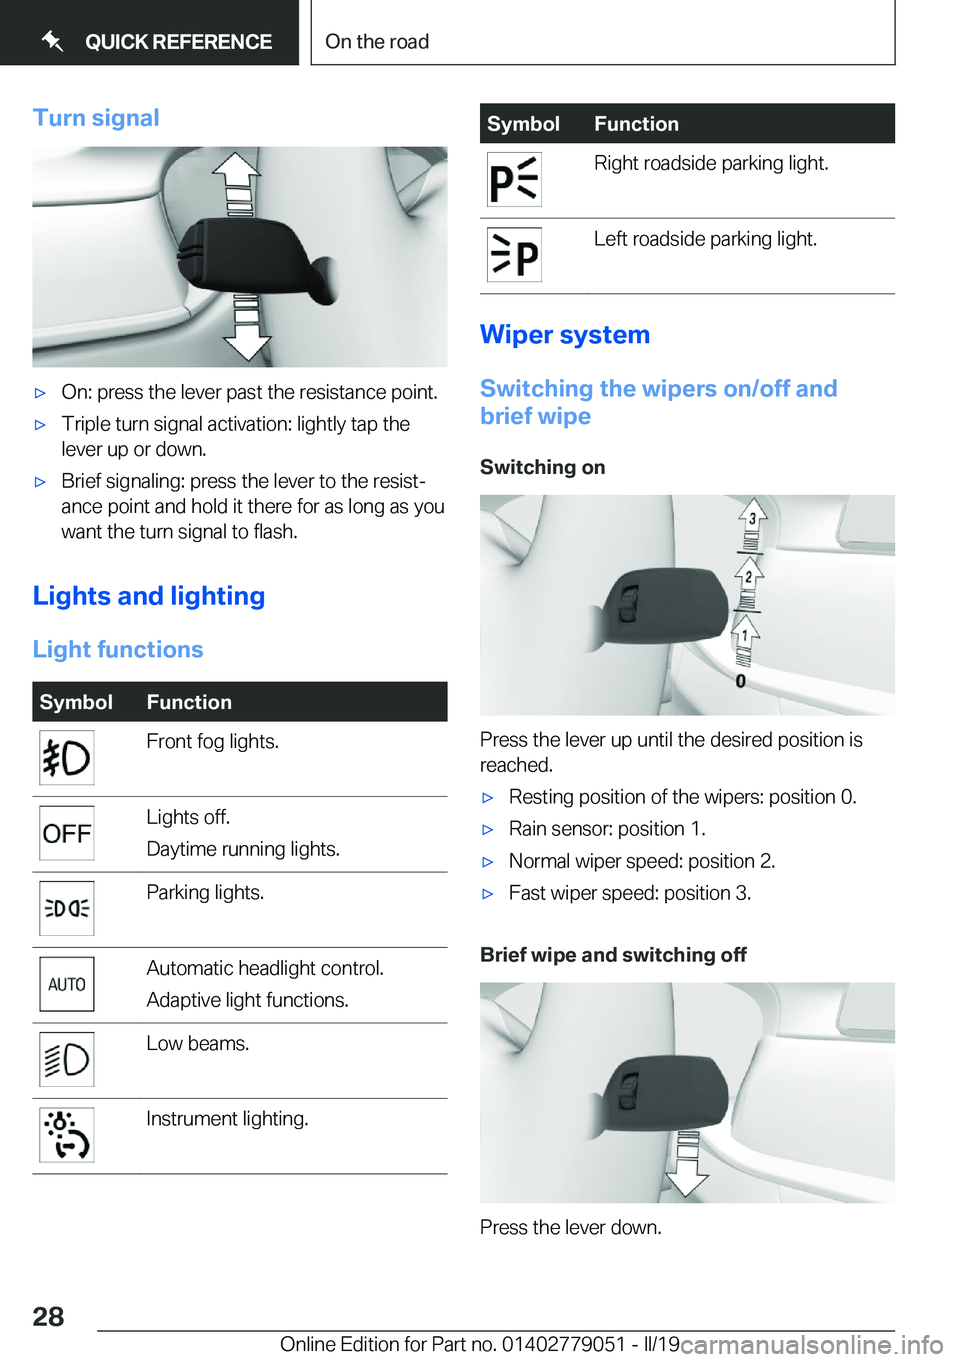 BMW 3 SERIES 2019 Owners Manual �T�u�r�n��s�i�g�n�a�l'x�O�n�:��p�r�e�s�s��t�h�e��l�e�v�e�r��p�a�s�t��t�h�e��r�e�s�i�s�t�a�n�c�e��p�o�i�n�t�.'x�T�r�i�p�l�e��t�u�r�n��s�i�g�n�a�l��a�c�t�i�v�a�t�i�o�n�:��l�i�g�h�t�l